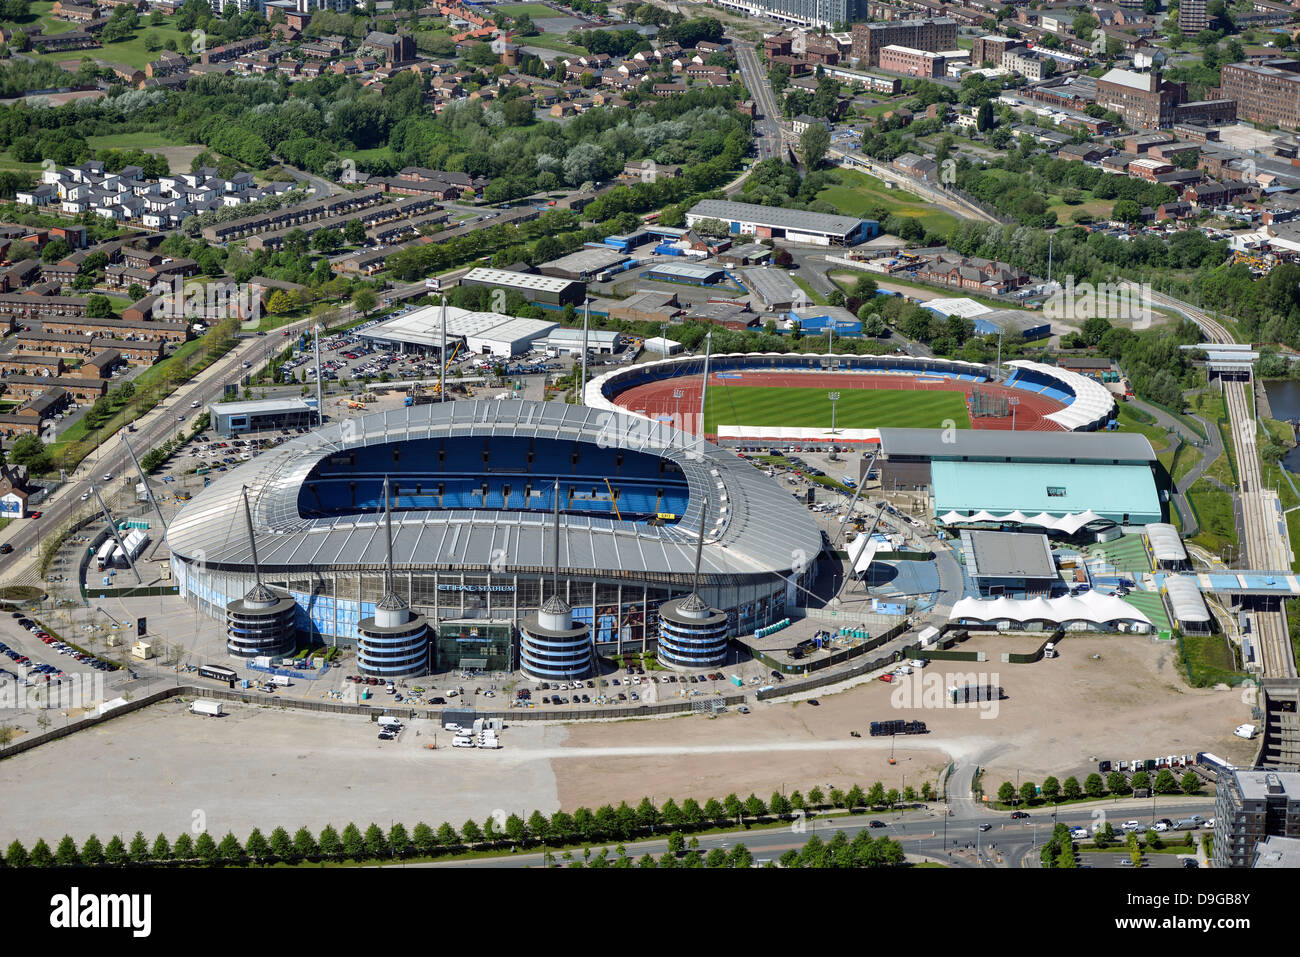 Fotografia aerea del Manchester City Calcio Club Foto Stock